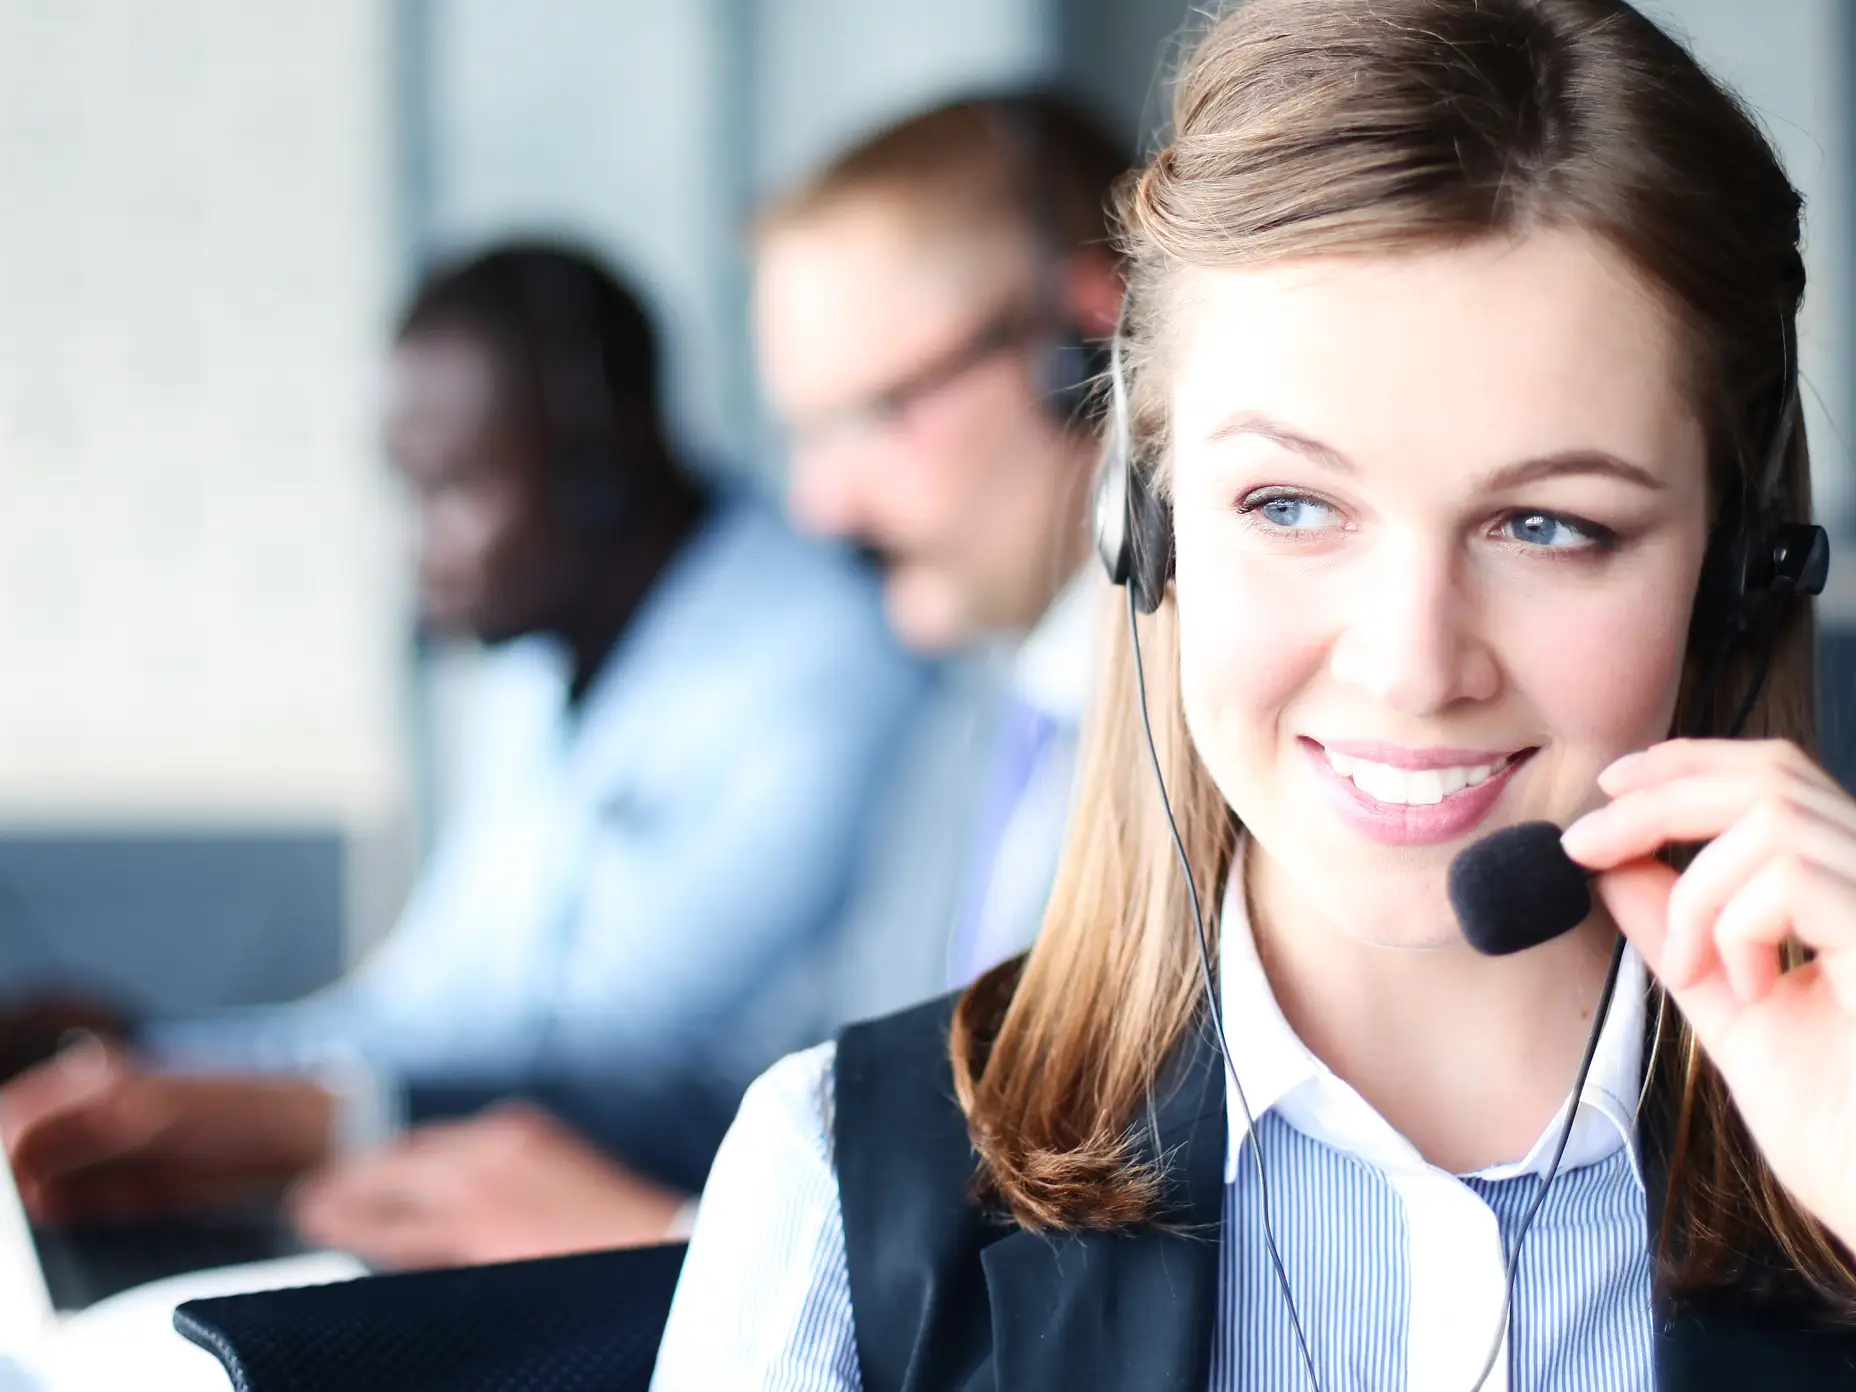 Portrét pracovnice call centra s týmem. Usměvavá pracovnice zákaznické podpory při práci.